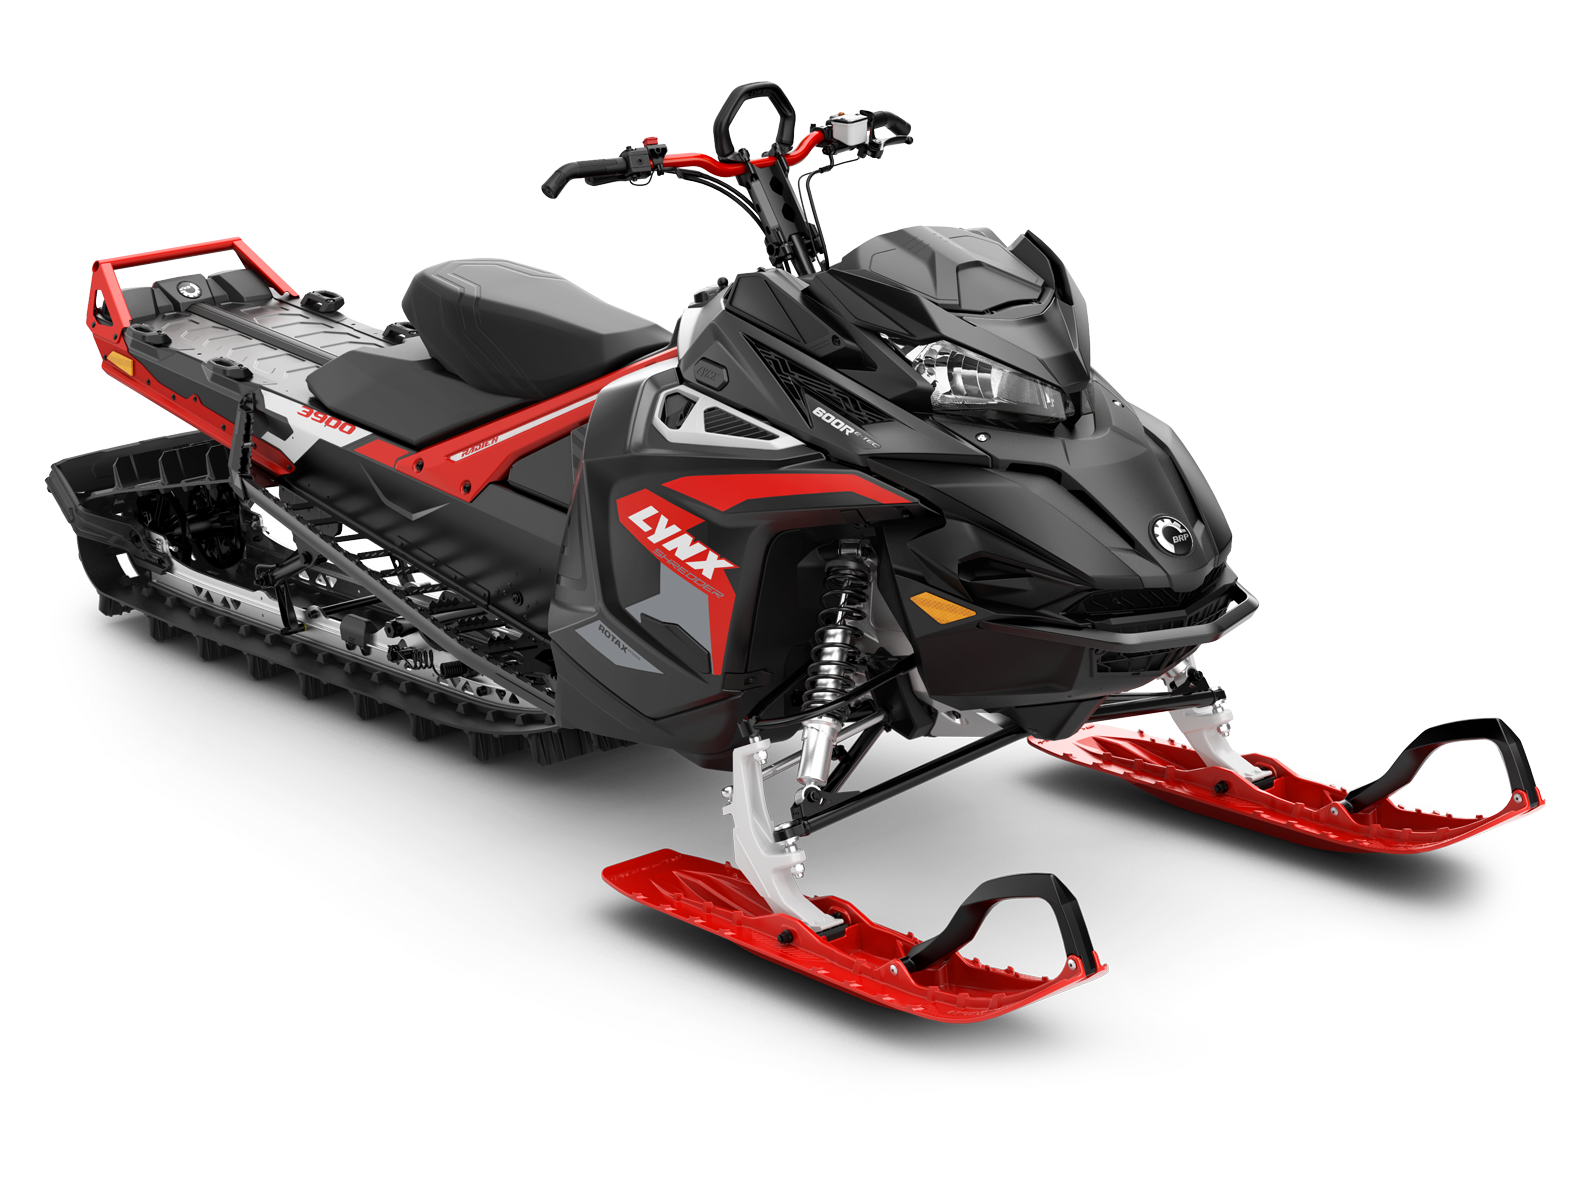 Lynx Shredder 3900 600R snowmobile